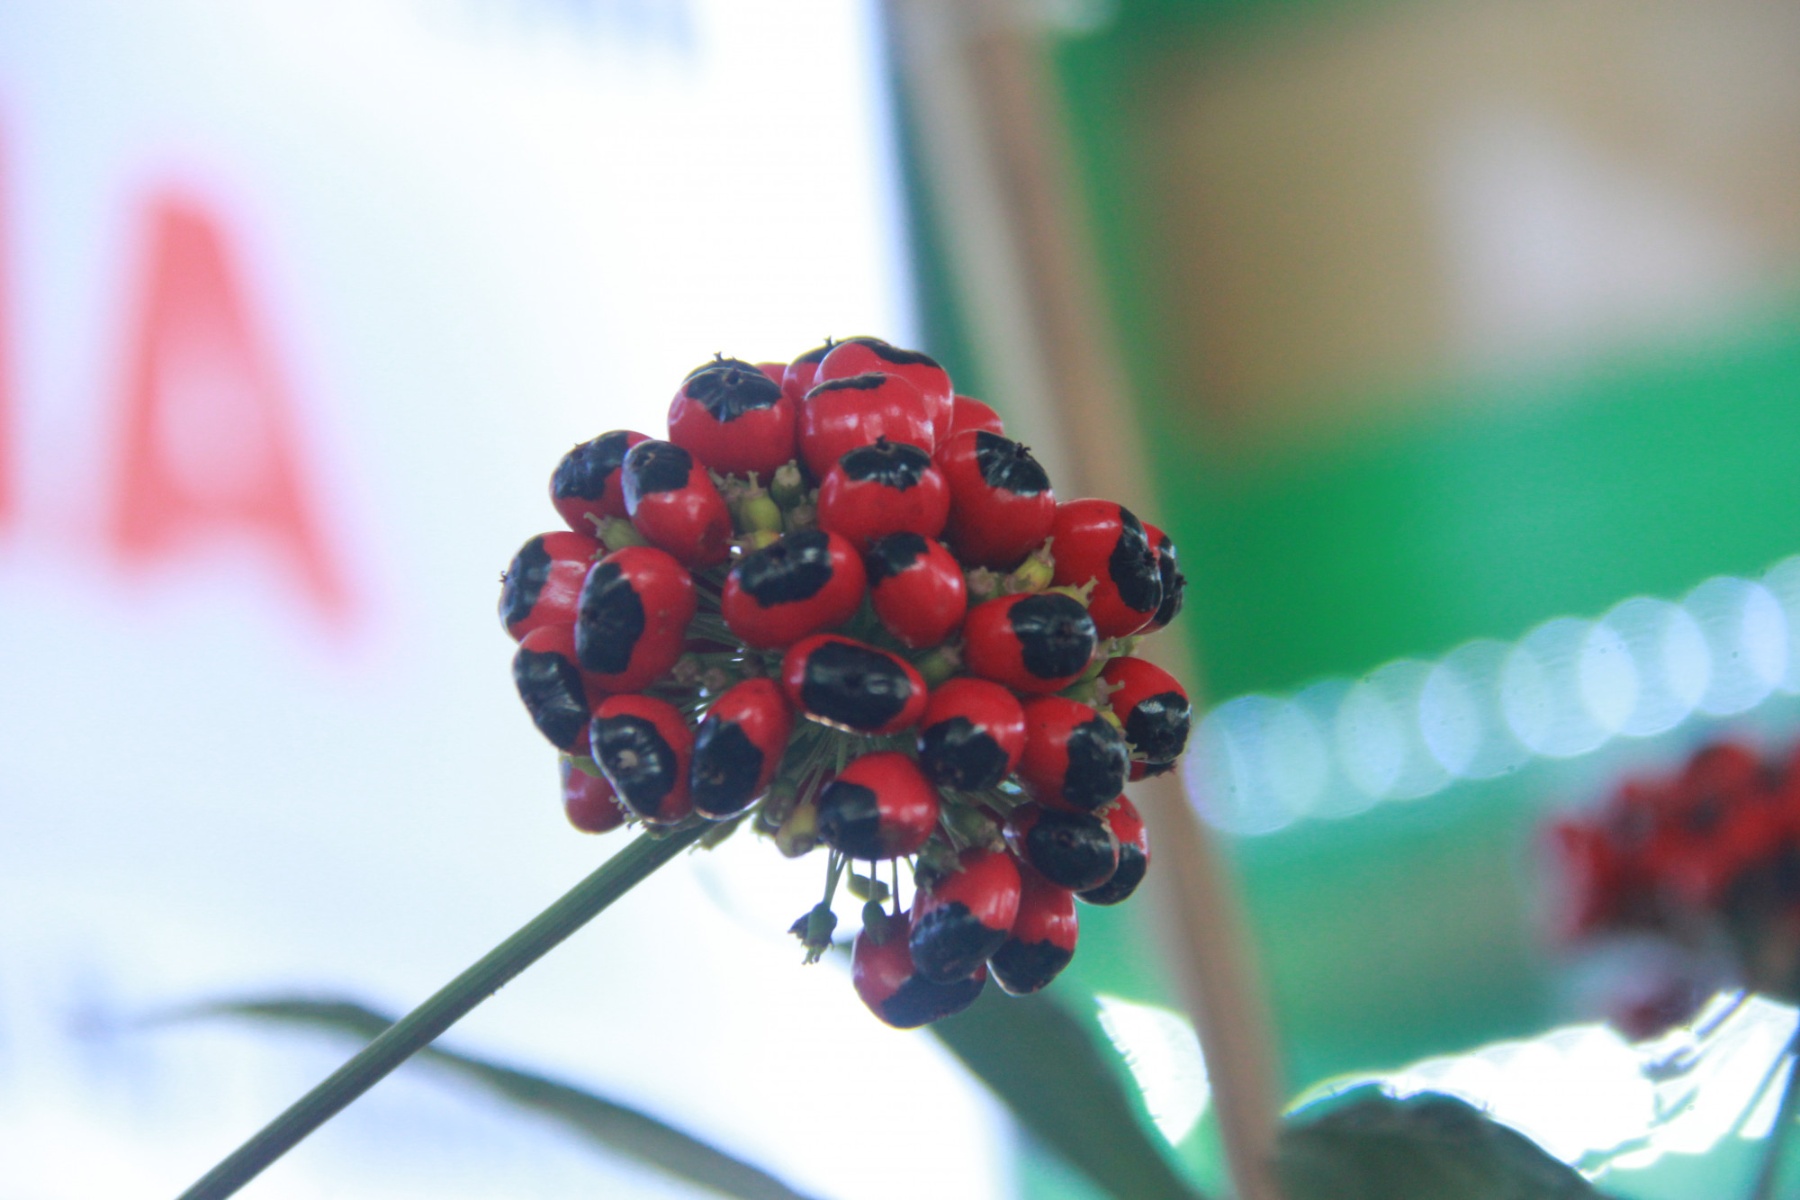 Bông hoa sâm chín đỏ rực với hơn 100 hạt. Theo giá thị trường hiện tại, mỗi hạt sâm trị giá khoảng 150 nghìn đồng